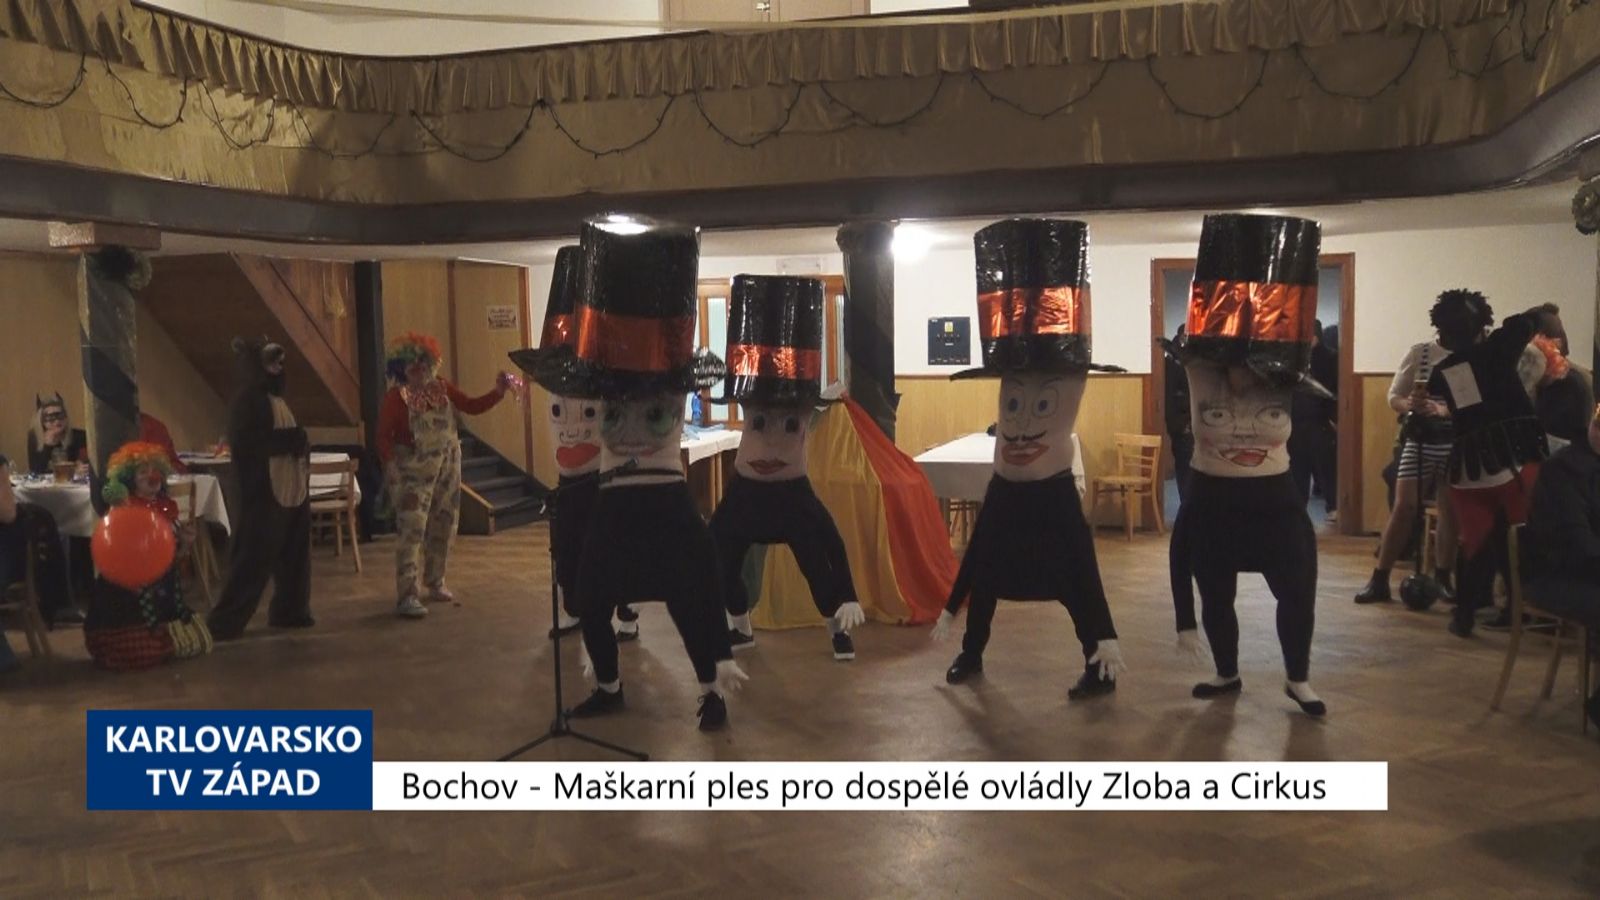 Bochov: Maškarní ples pro dospělé ovládly Zloba a Cirkus (TV Západ)